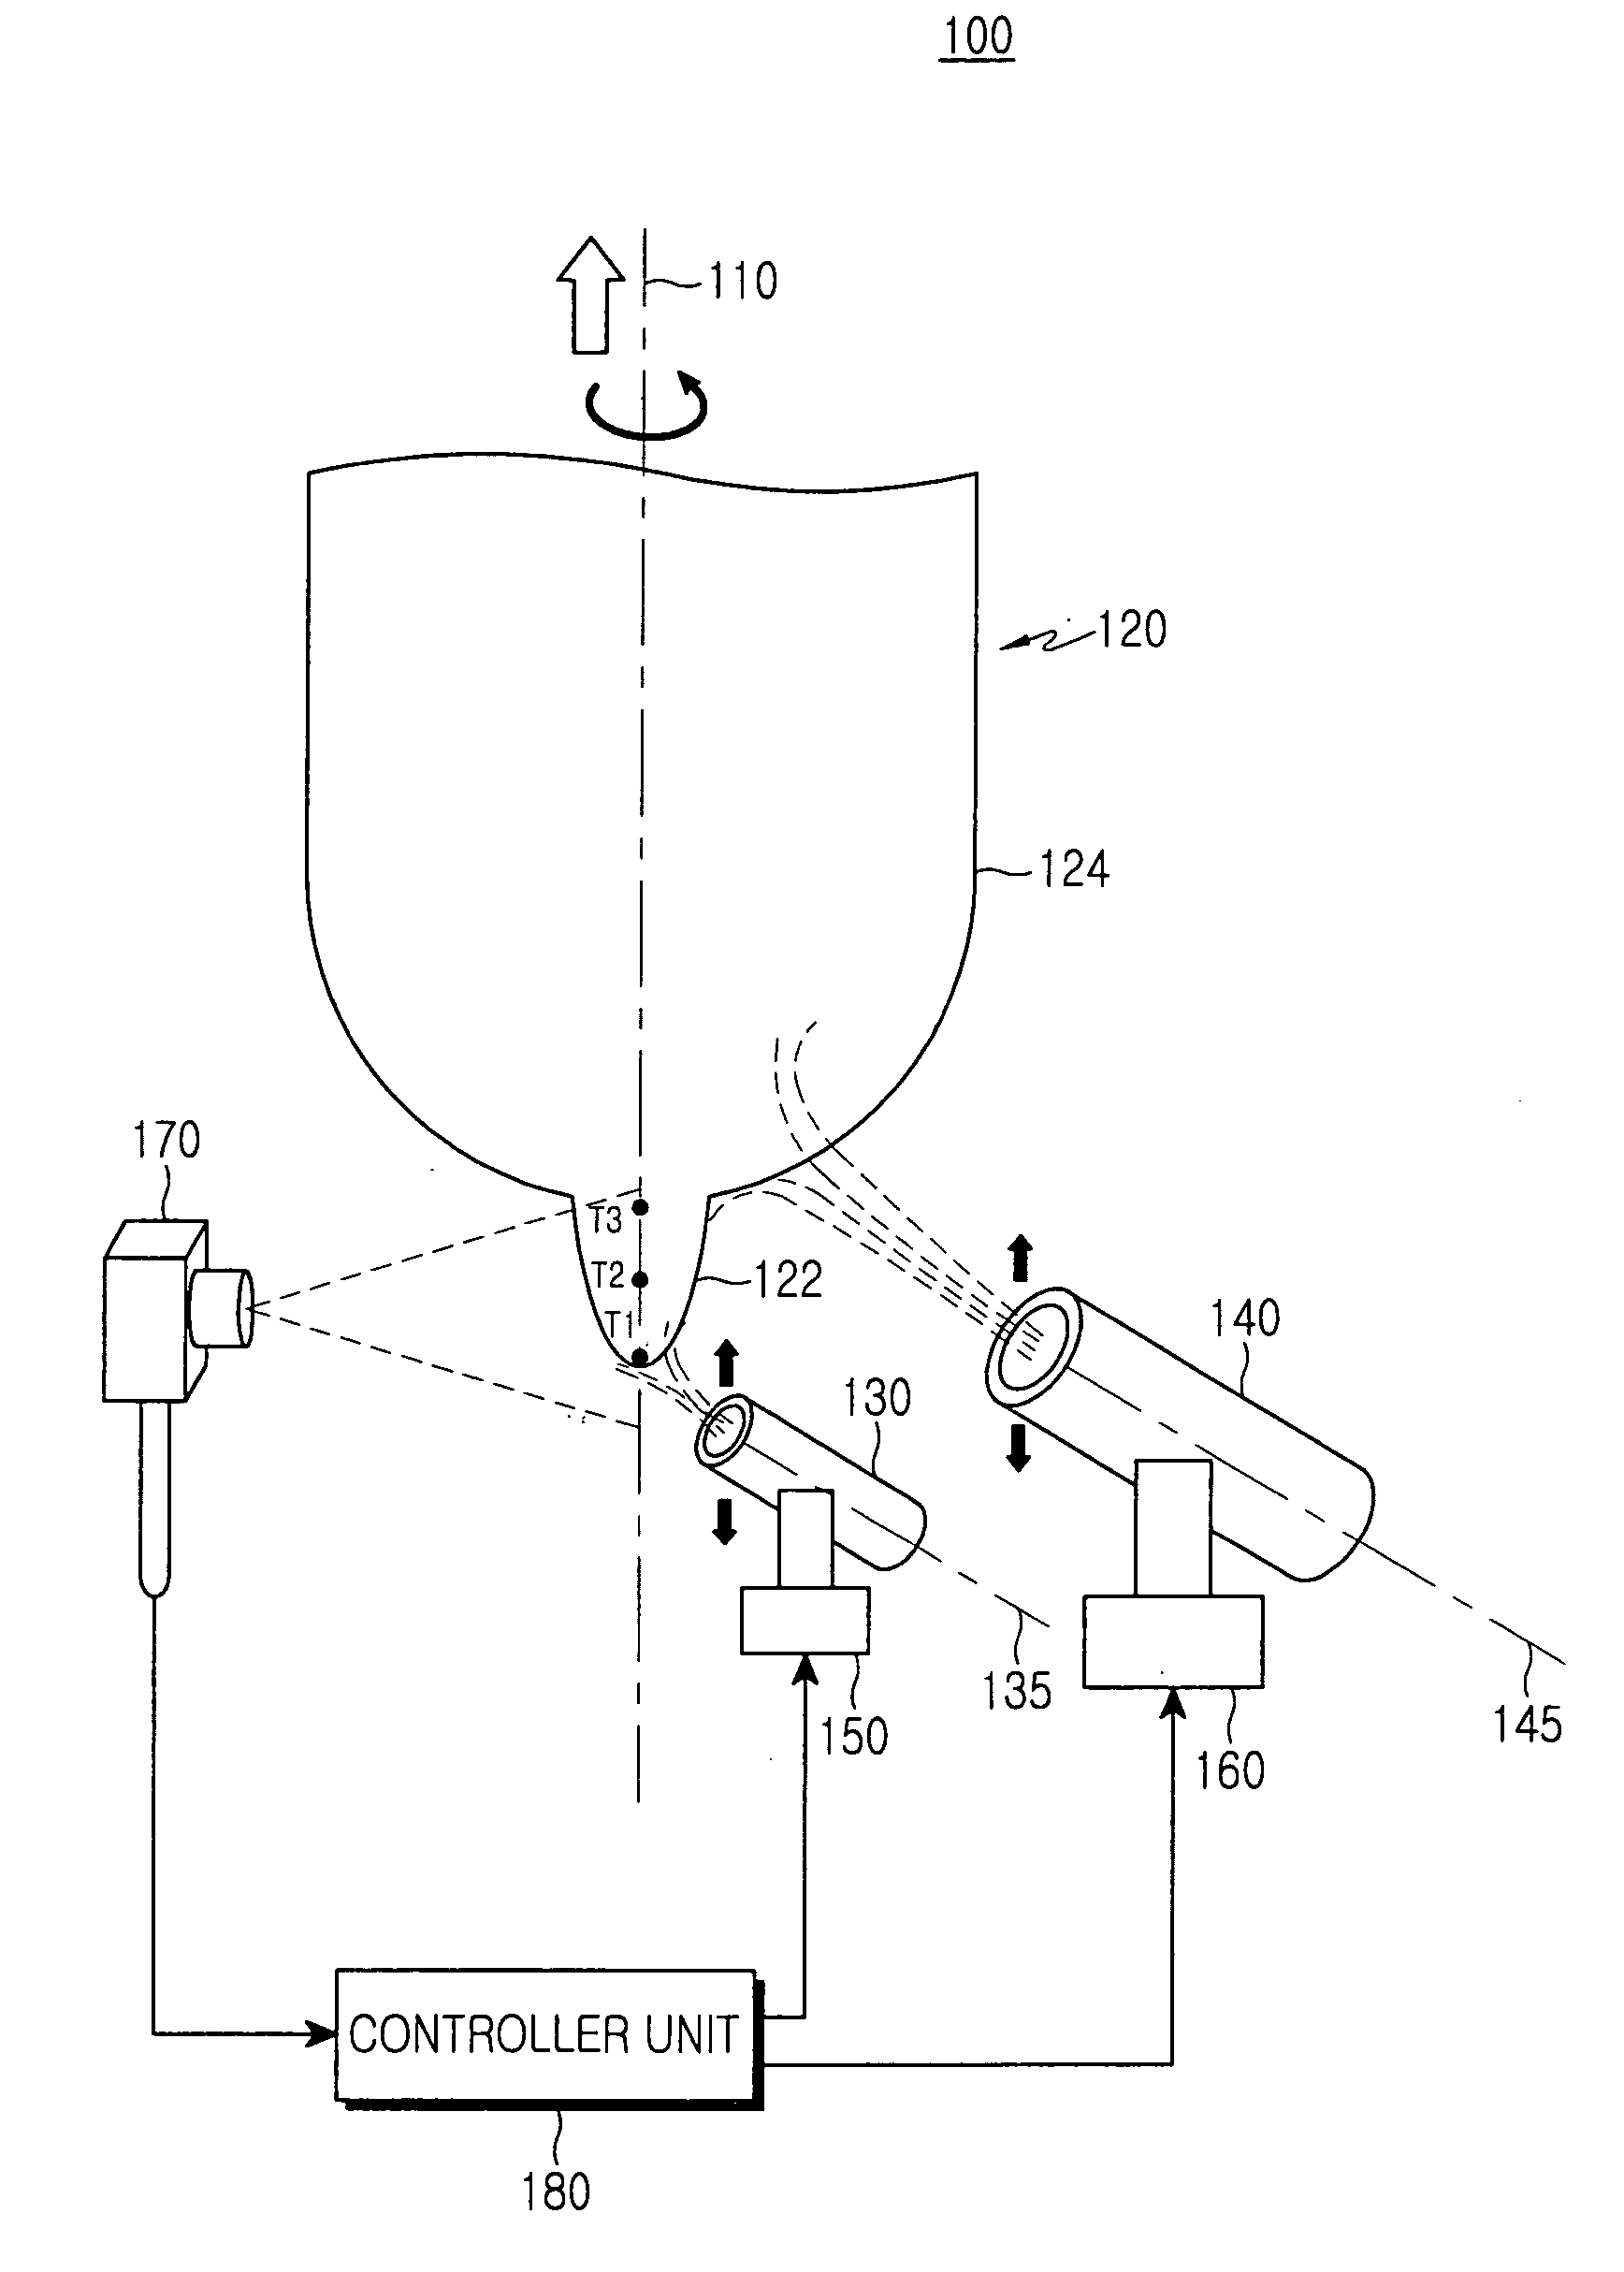 Vapor axial deposition apparatus and vapor axial deposition method